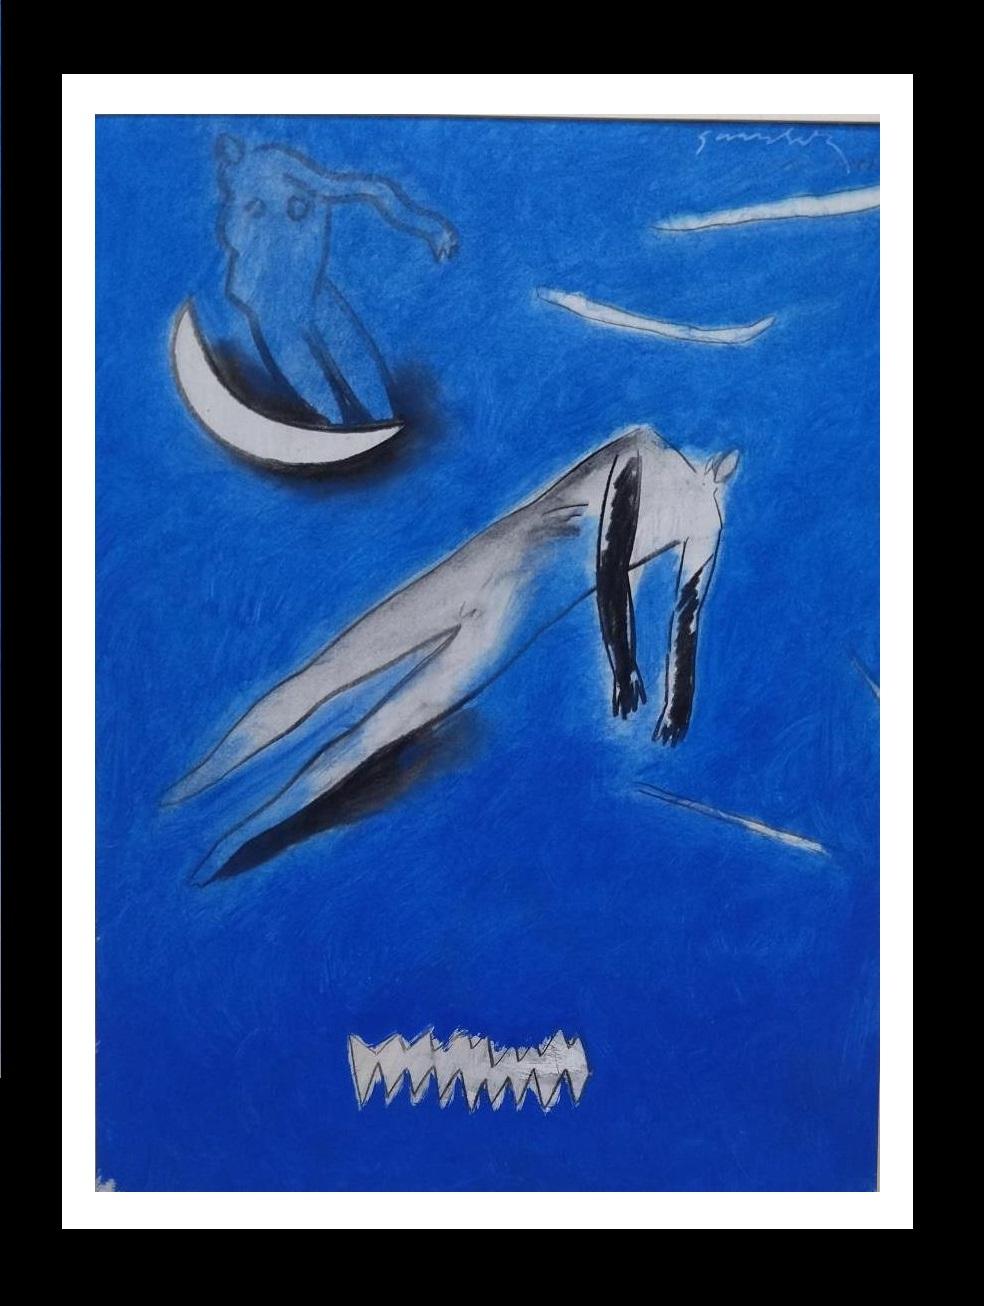 Œuvre originale de l'artiste espagnol GERARD SALA.
 "-NO TITLE" peinture originale en techniques mixtes
 encadré
Gerard Sala i Rosselló est né à Tona (Osona) le 9 mars 1942. Il a passé son enfance à Palma de Majorque. Il vit actuellement à Badalona